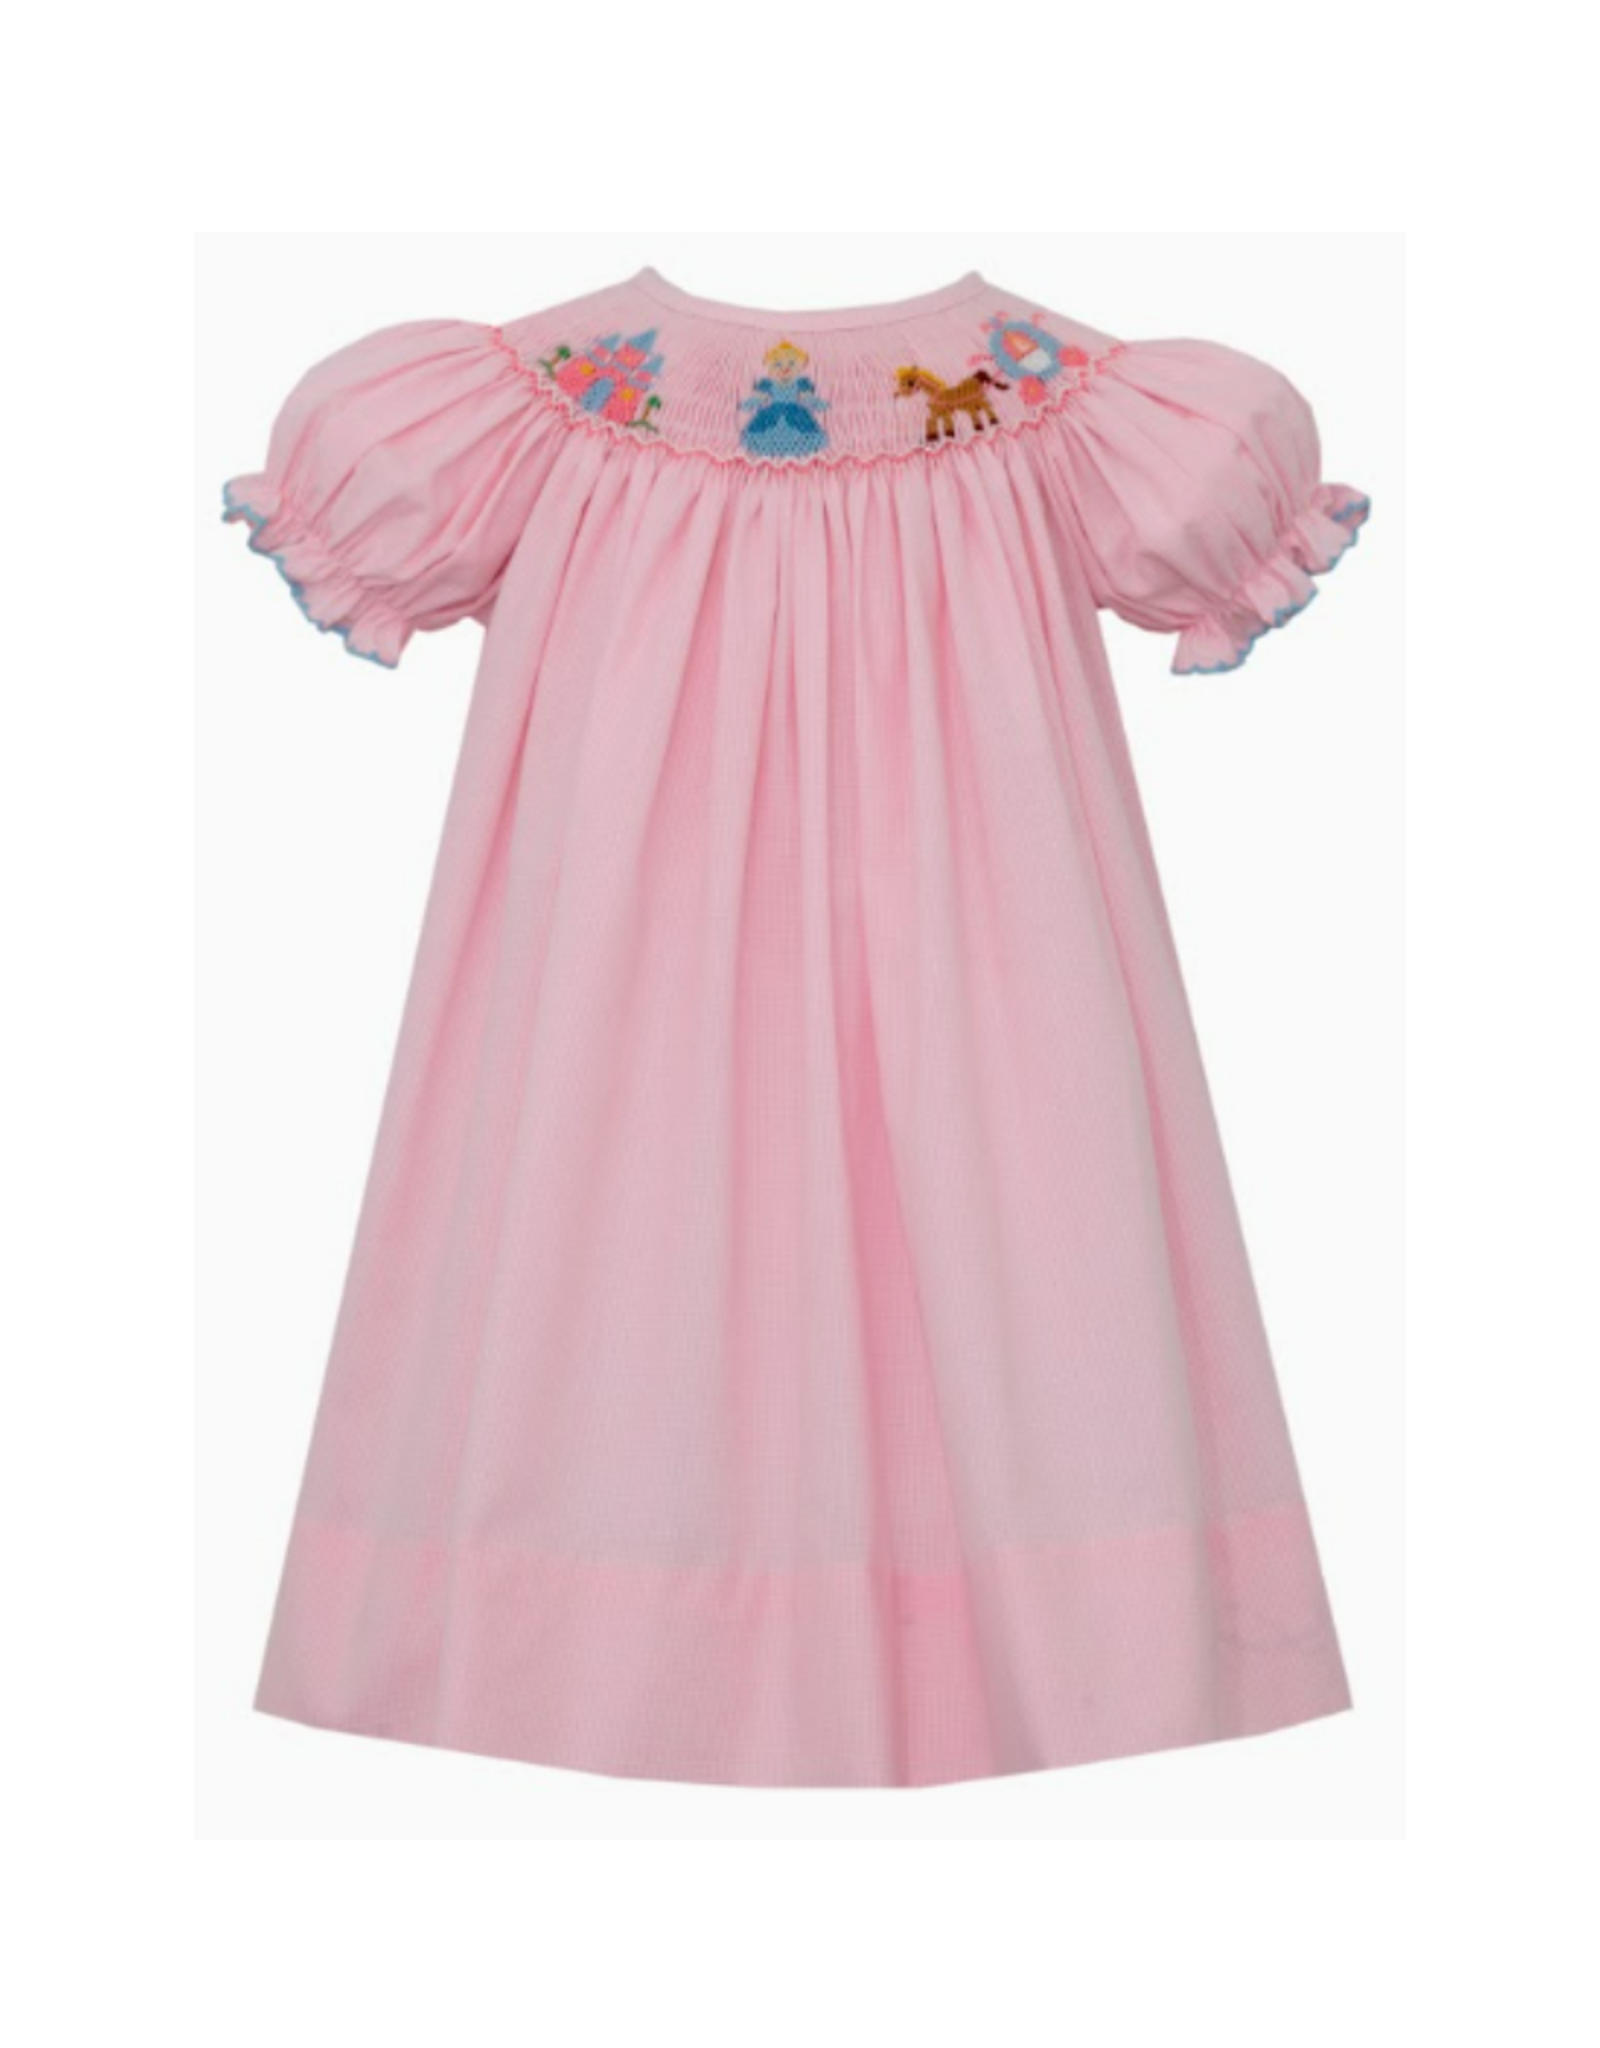 Petit Bebe Princess Smocked SS Bishop Dress Pink Check